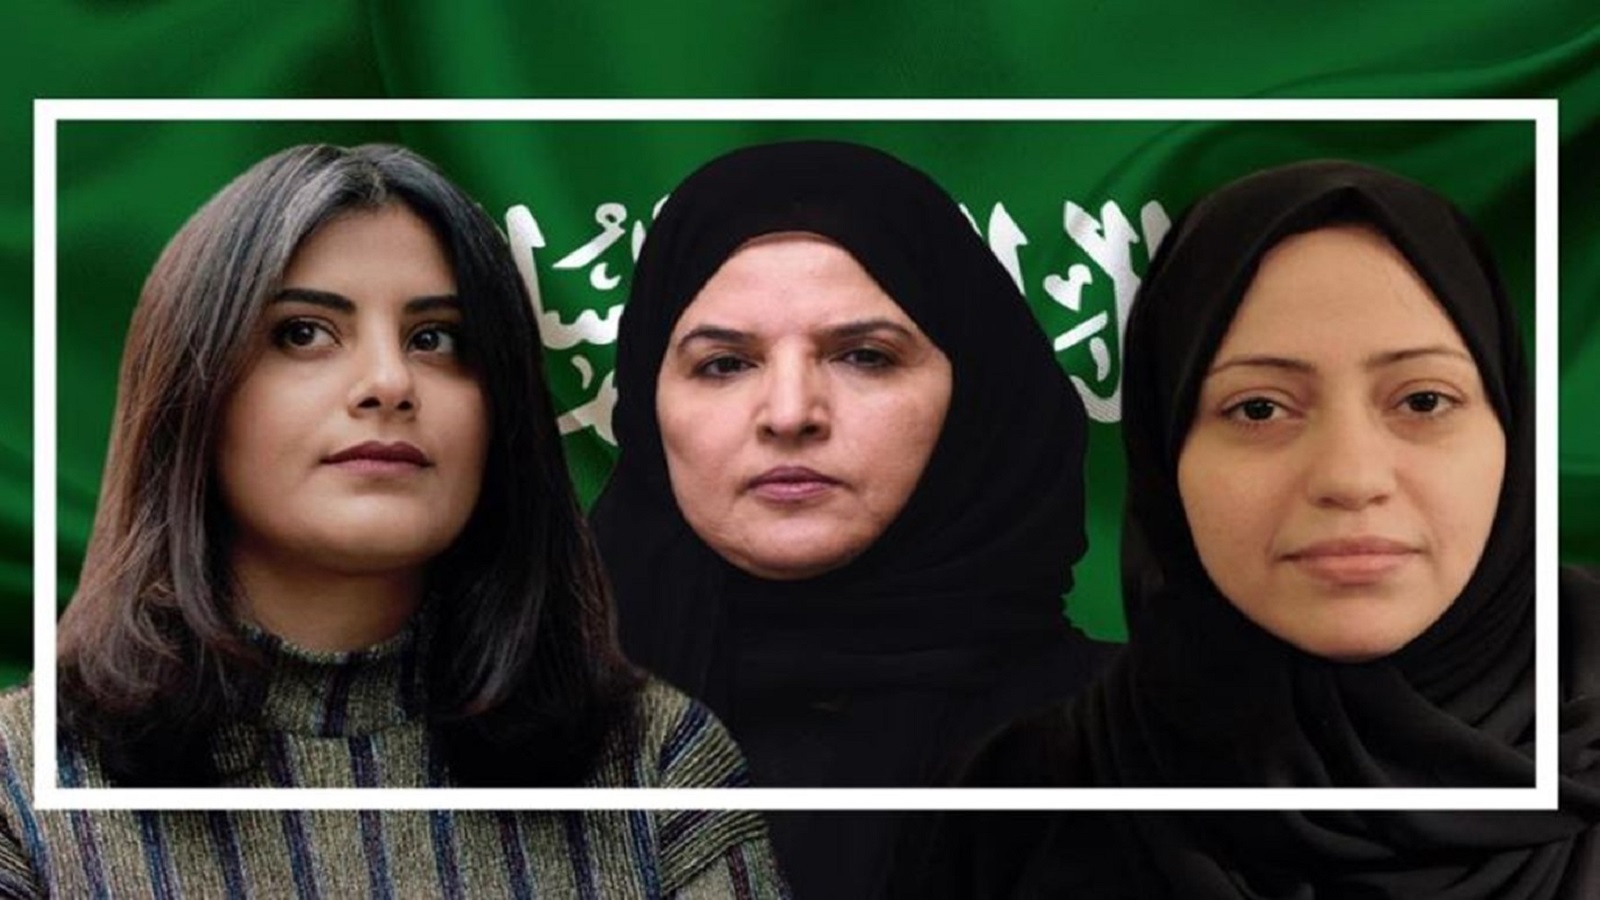 السعودية تتراجع عن اتهام النسوية بالتطرف